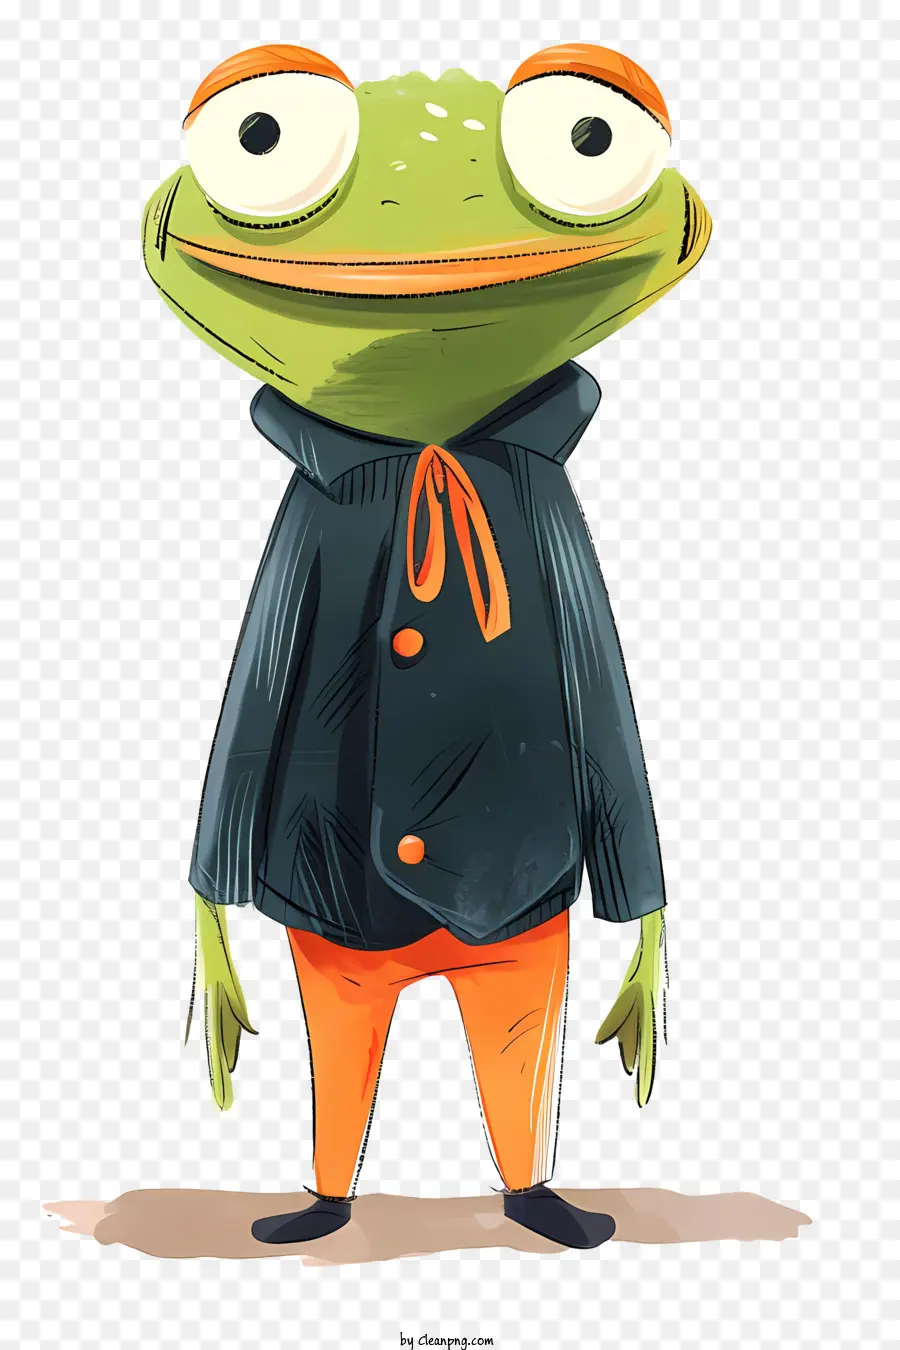 kermit der Frosch - Cartoonfrosch in orangefarbenen Kleidung streng stehend